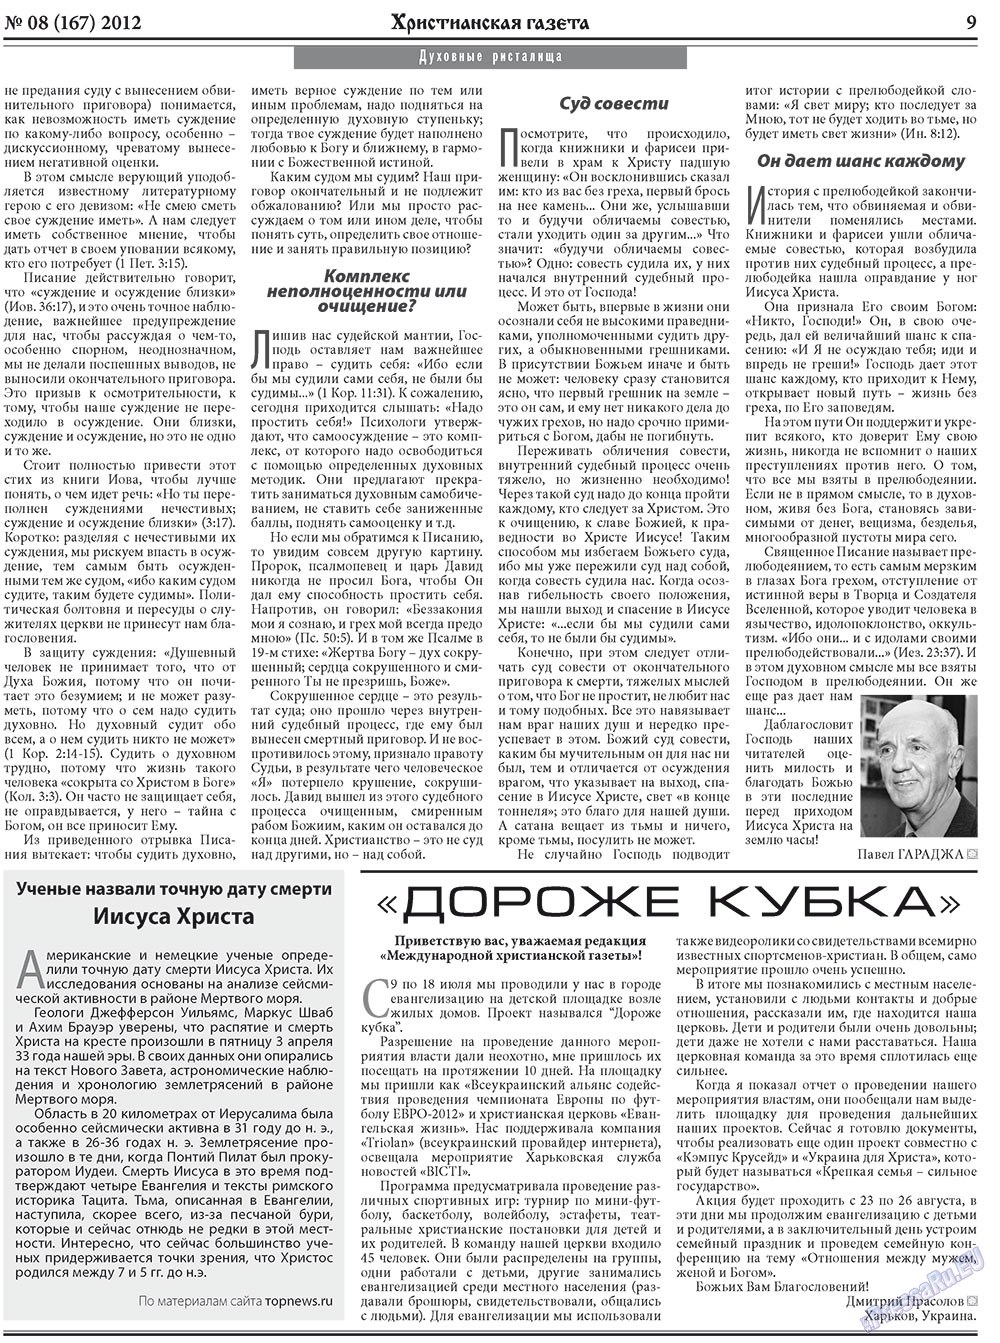 Христианская газета, газета. 2012 №8 стр.9